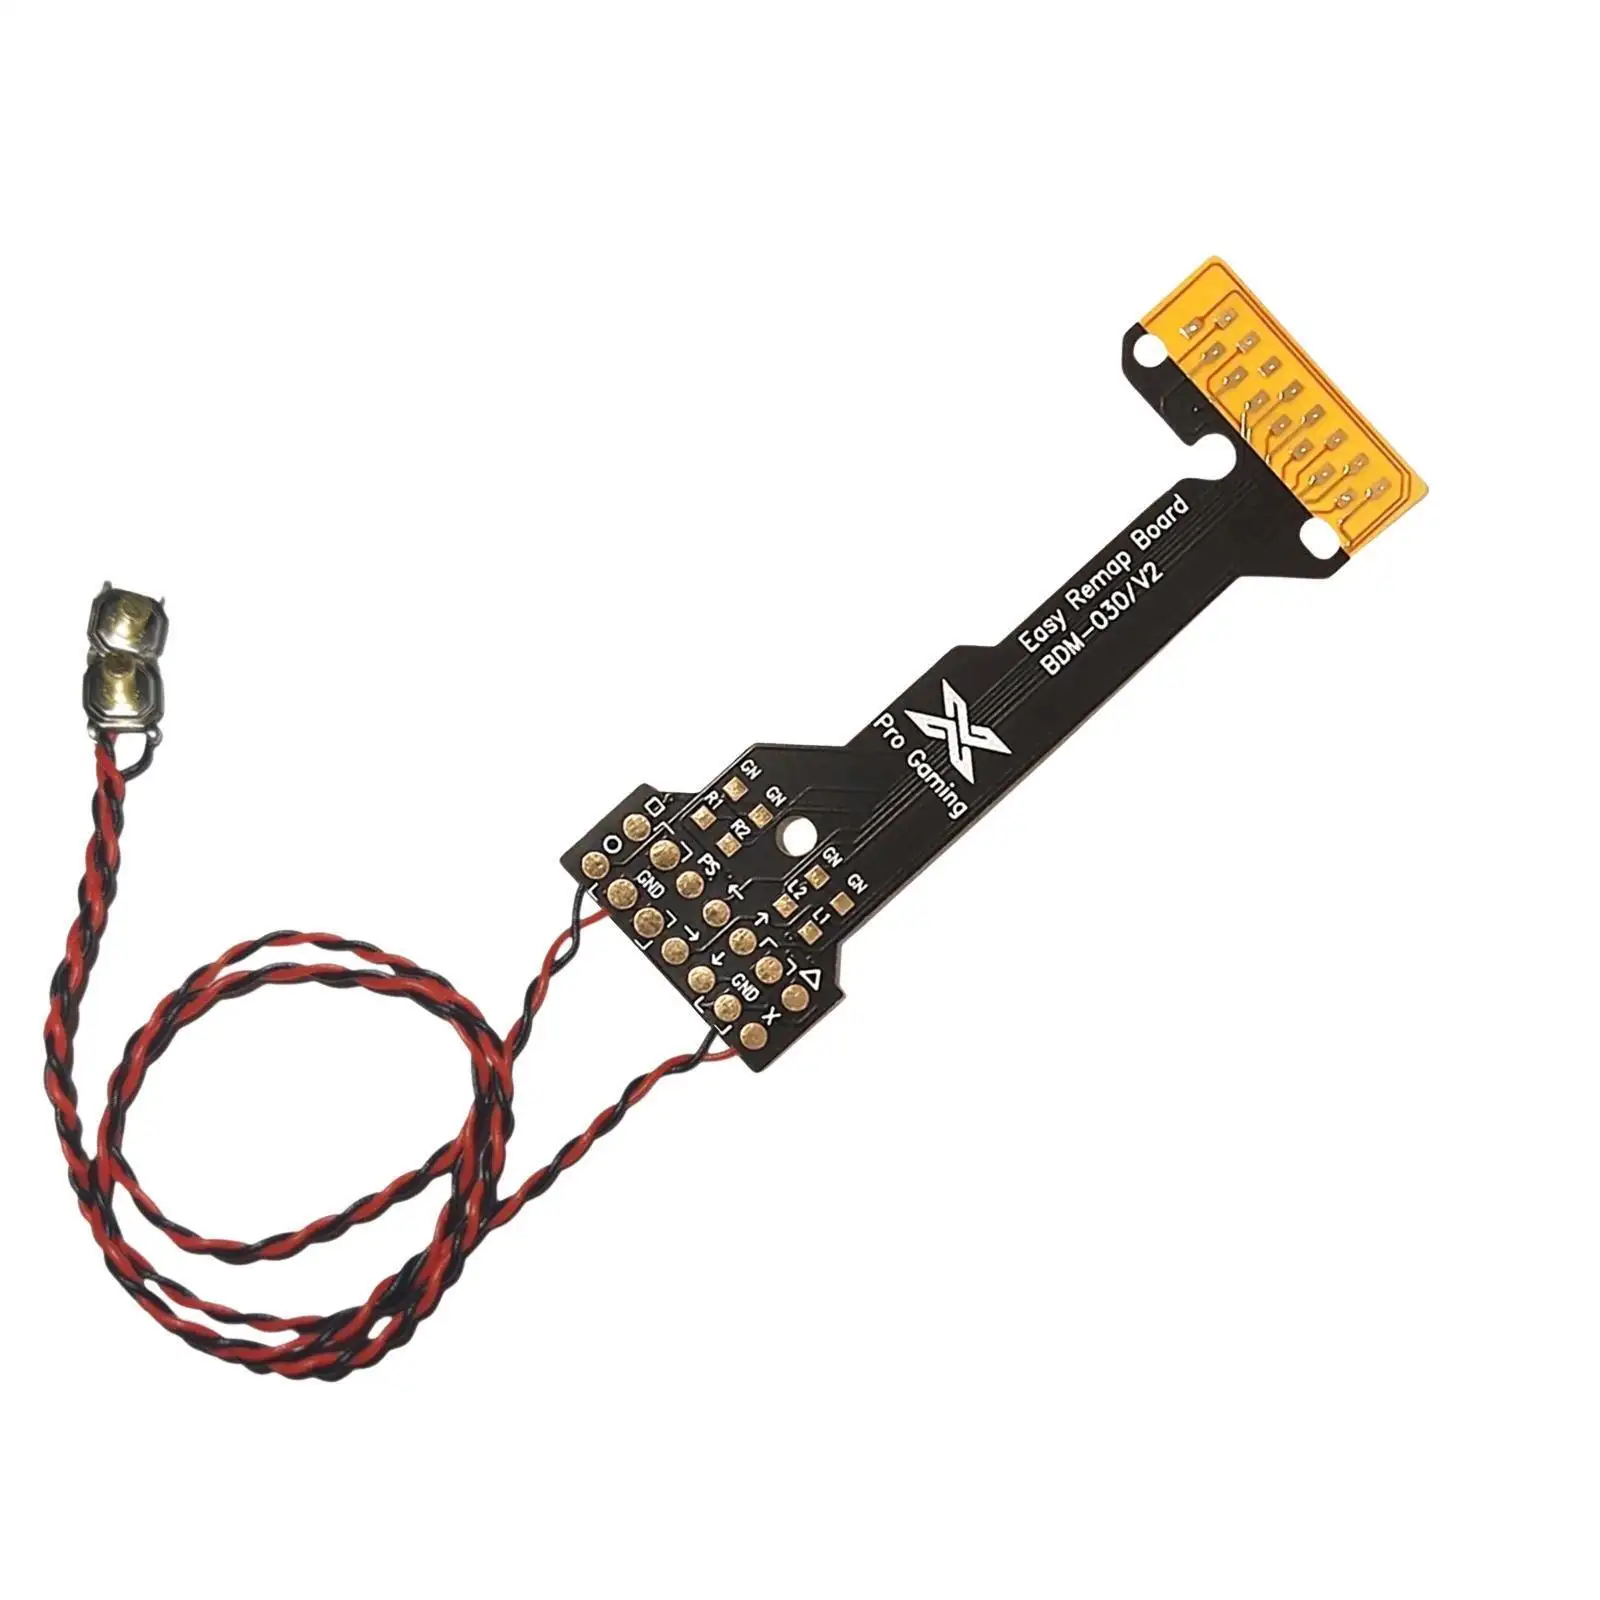 PS5 papan Remapper Remap V2 BDM 030 | Chip Mod Scuf untuk pengontrol Dualsense